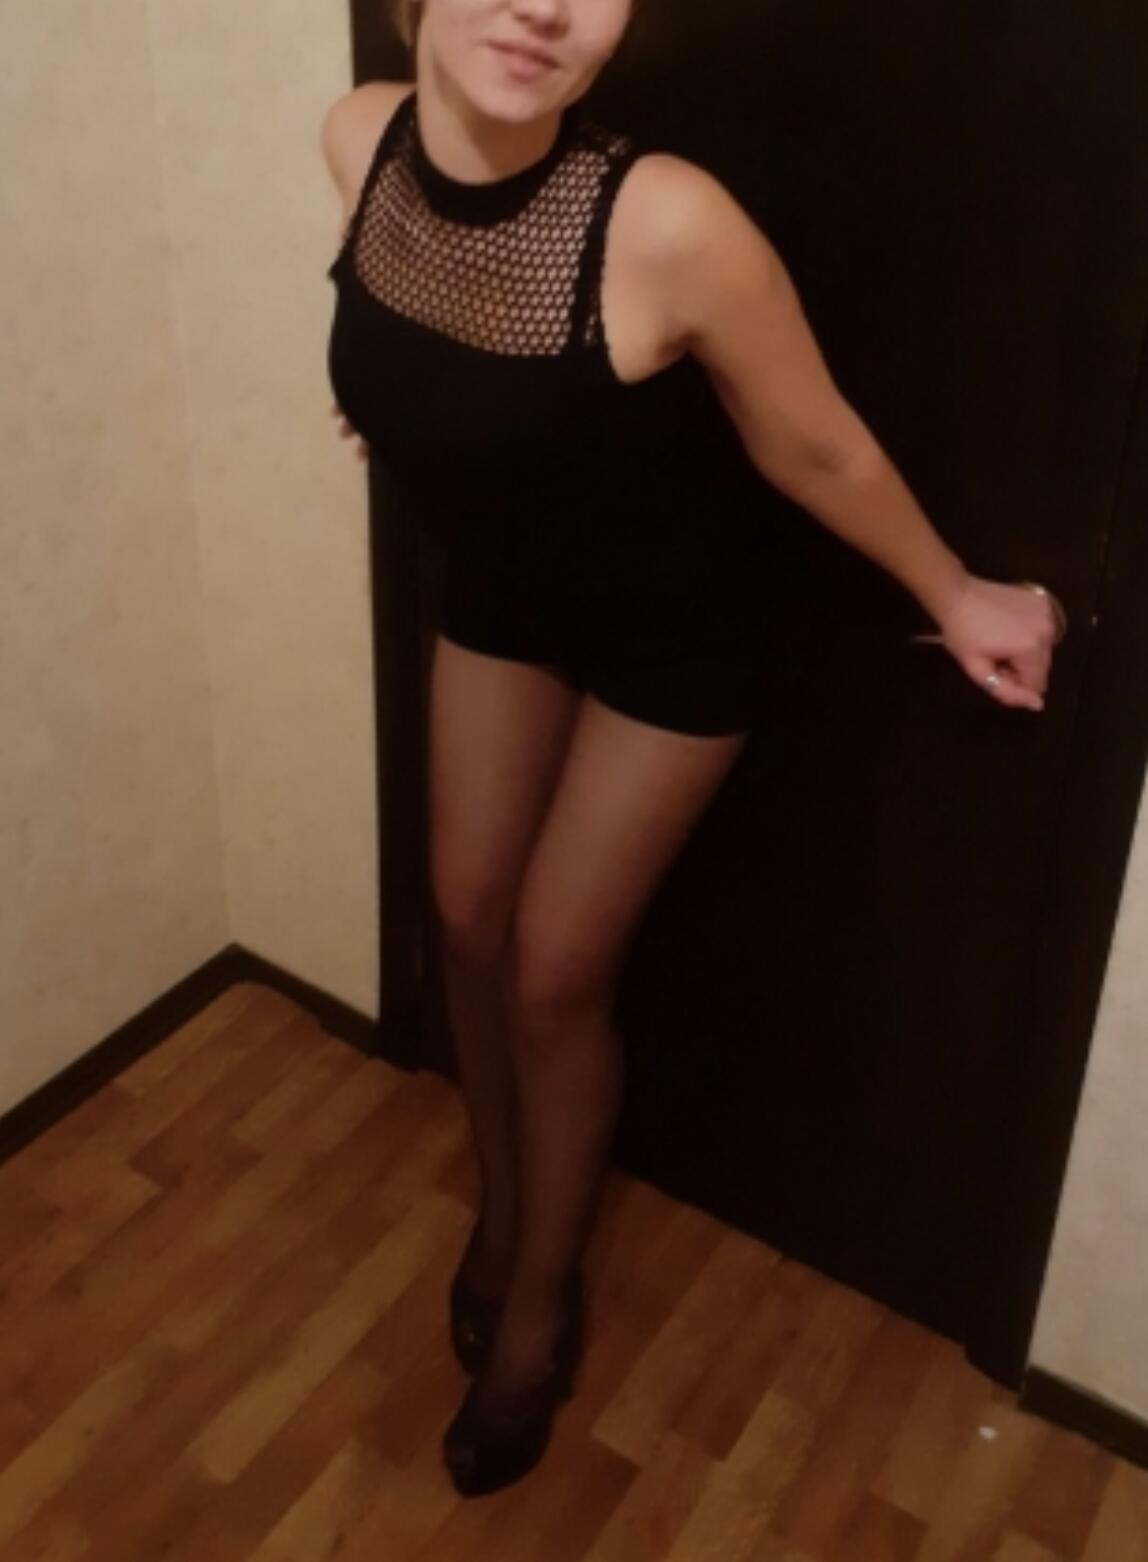 Проститутка Margo, фото 3, тел: 0960407932. Obolon area - Киев